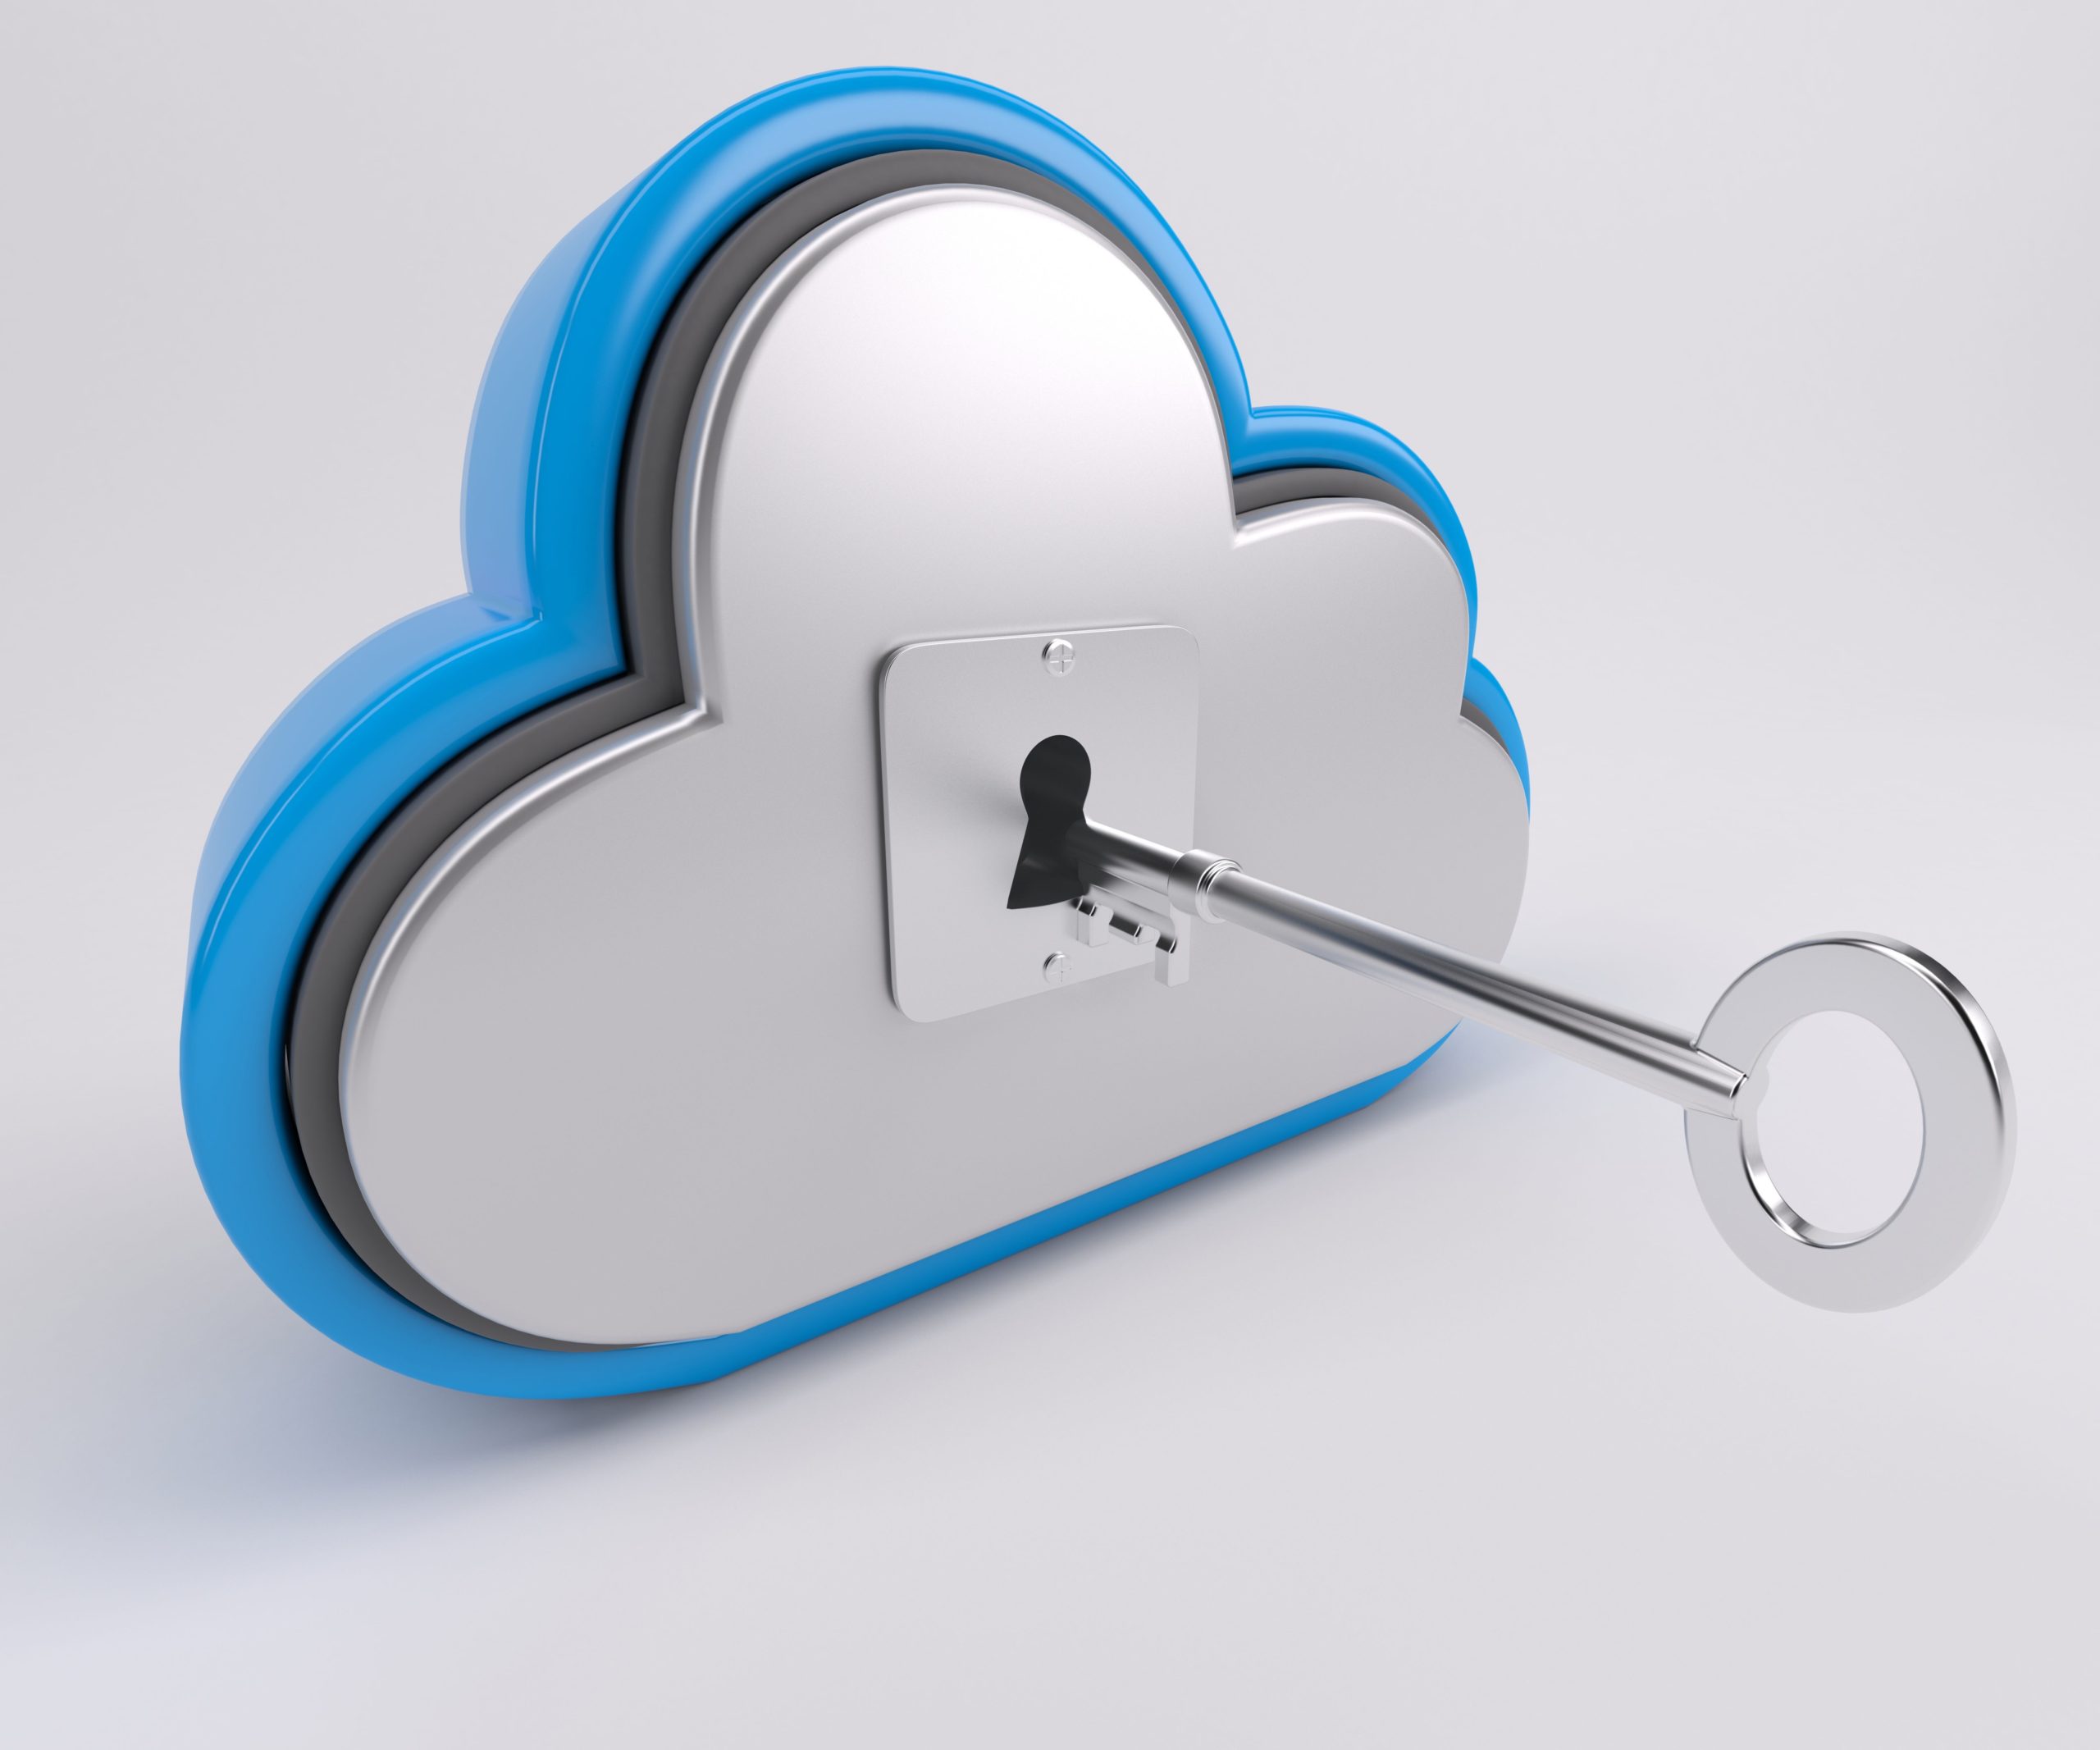 McAfee Cloud data security